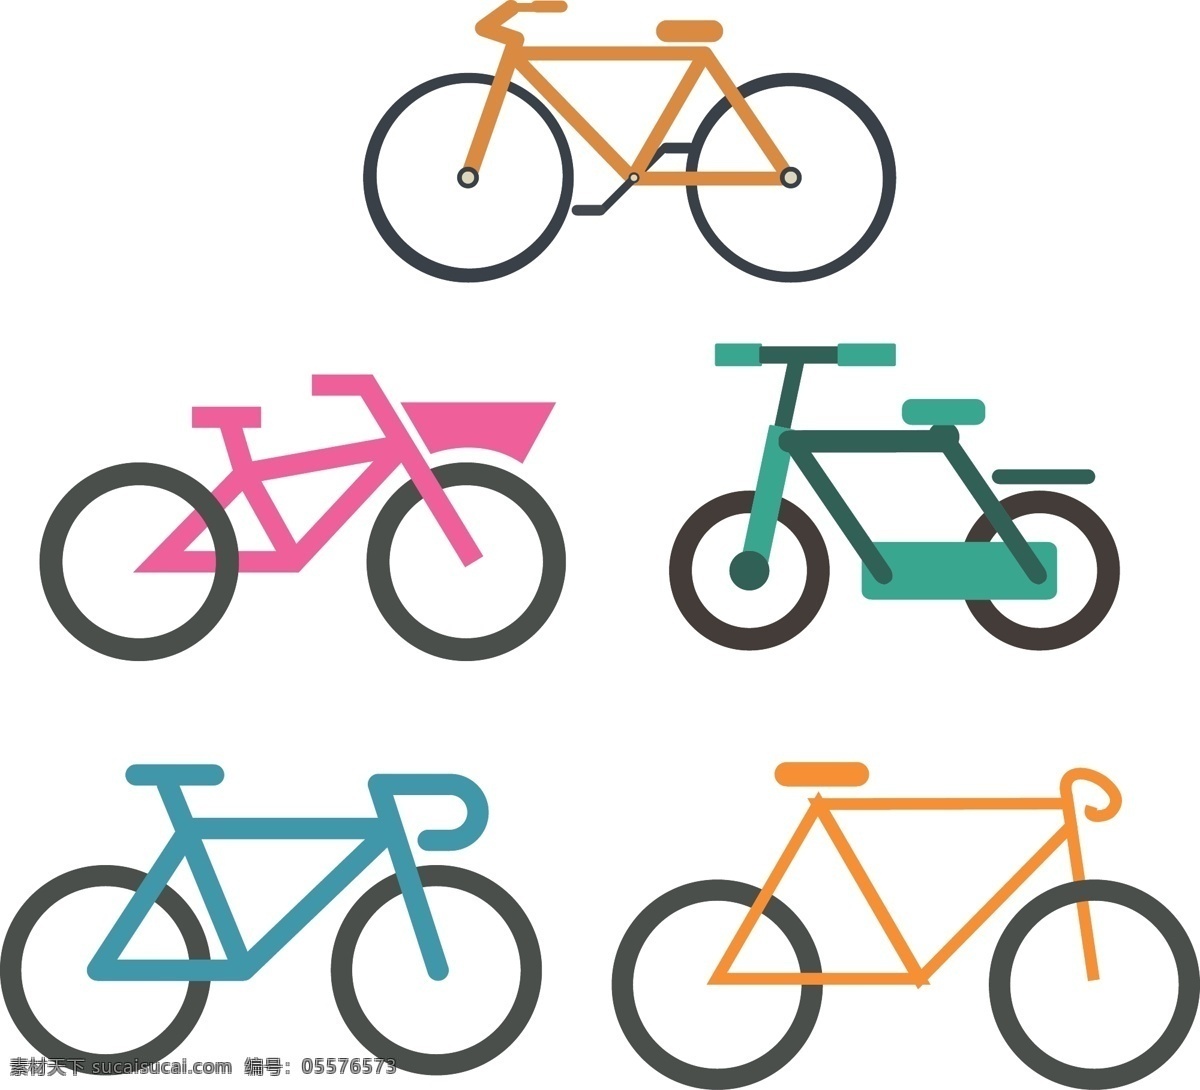 自行车 矢量 自行车矢量 自行车素材 单车 单车矢量 单车素材 脚踏车 脚踏车矢量 脚踏车素材 共享设计矢量 现代科技 交通工具